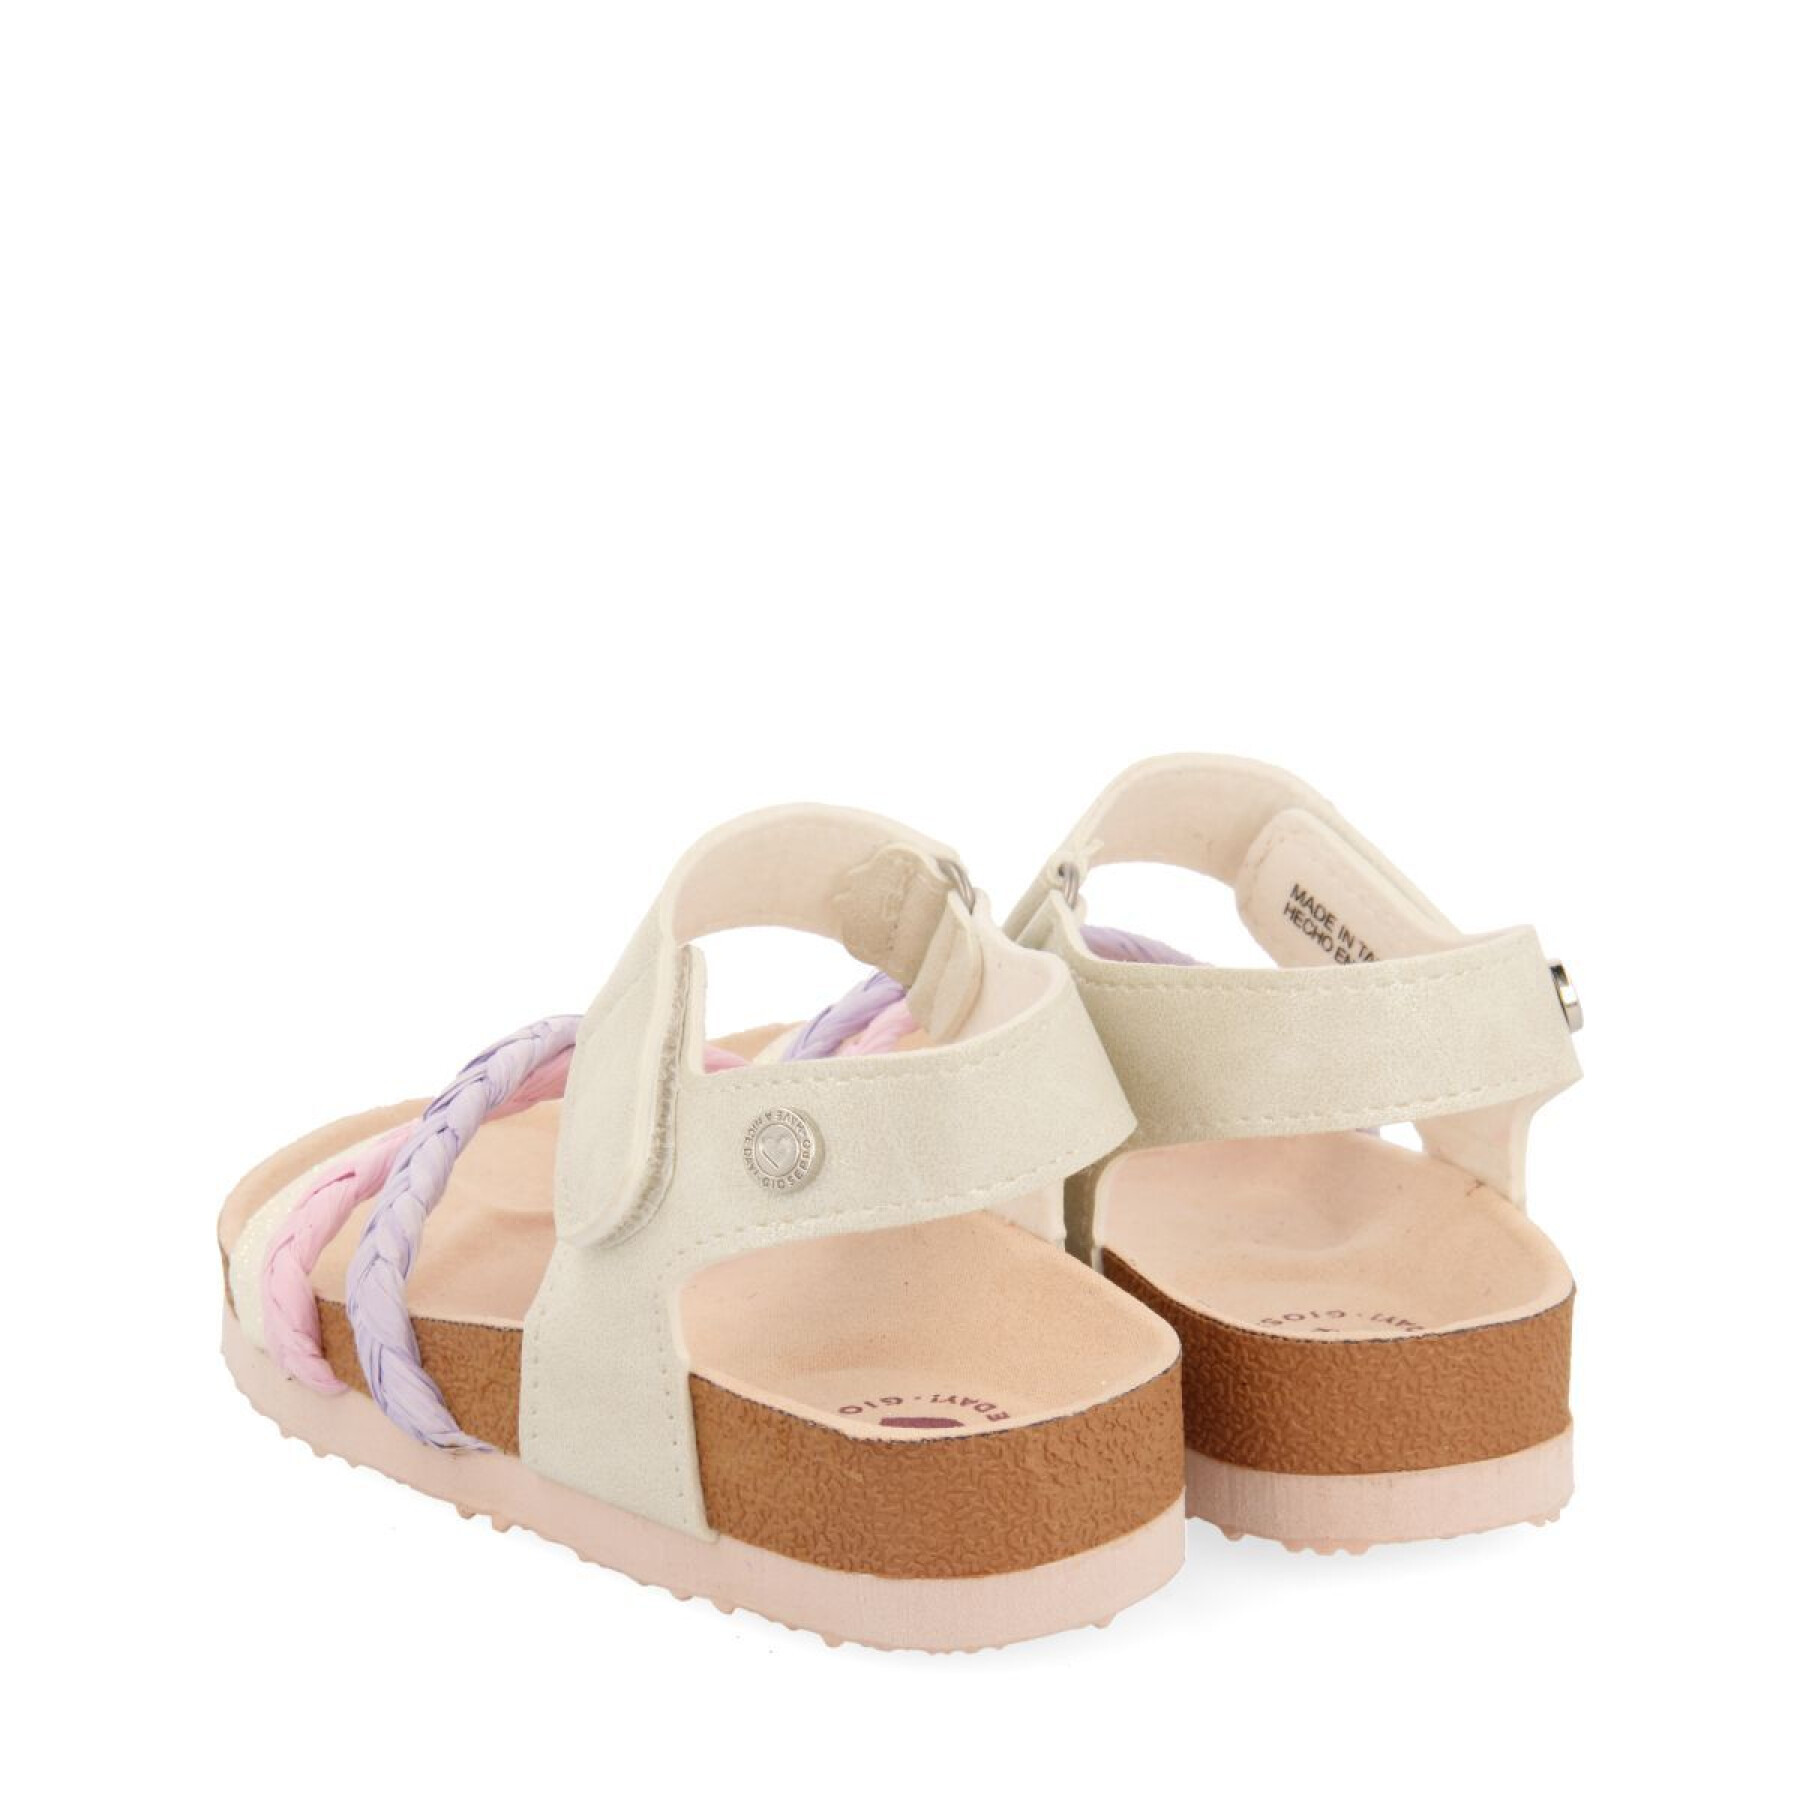 Baby girl sandals Gioseppo Delia